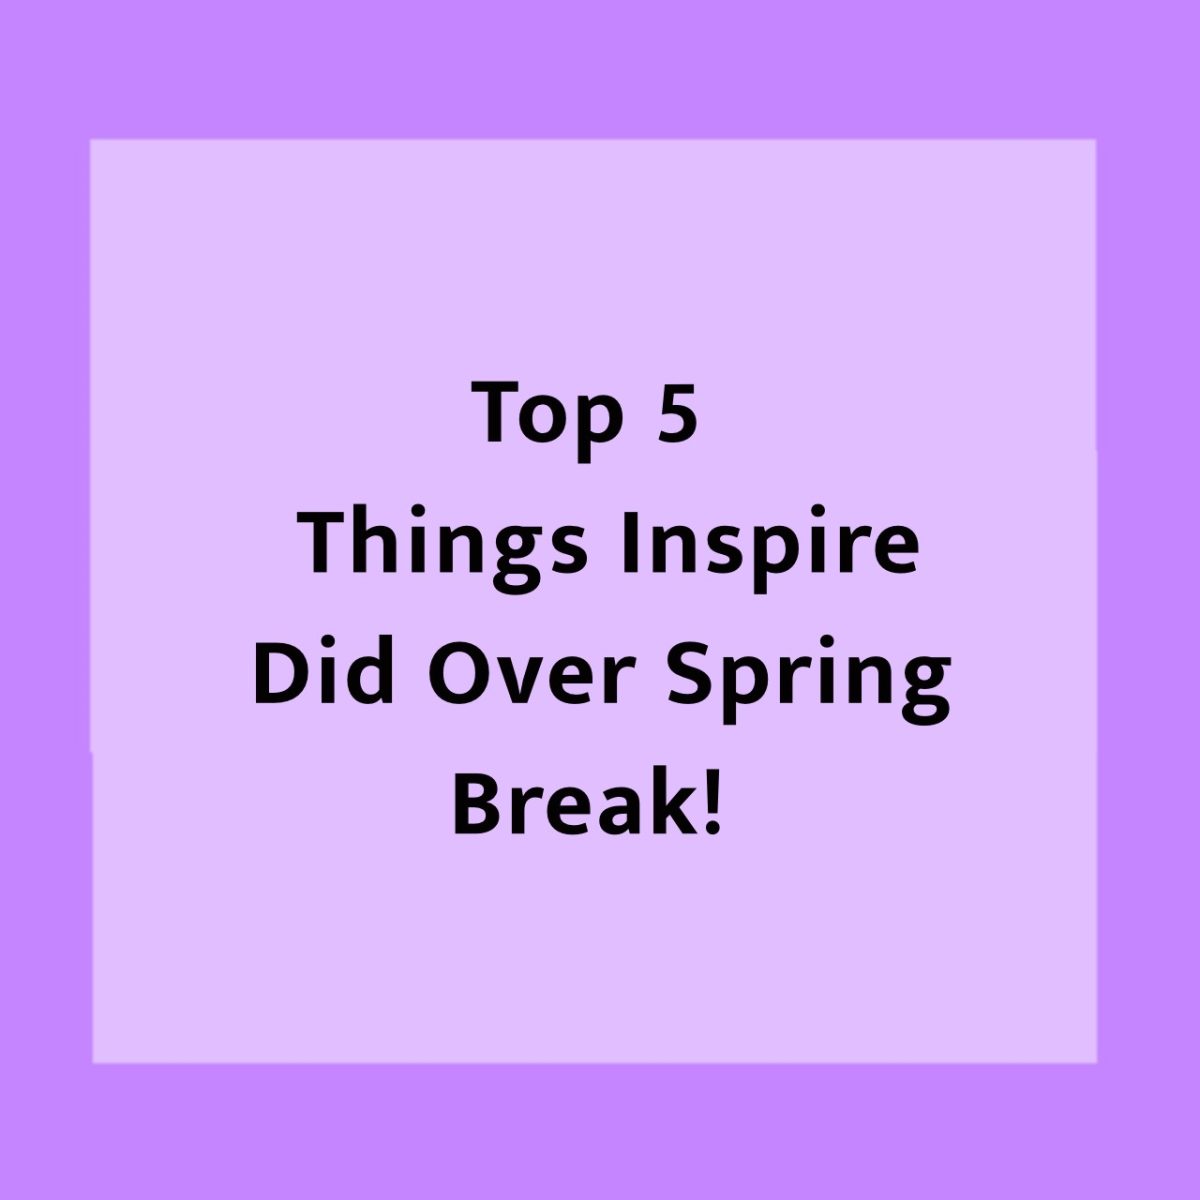 Top 5 Things Inspire Did Over Spring Break!